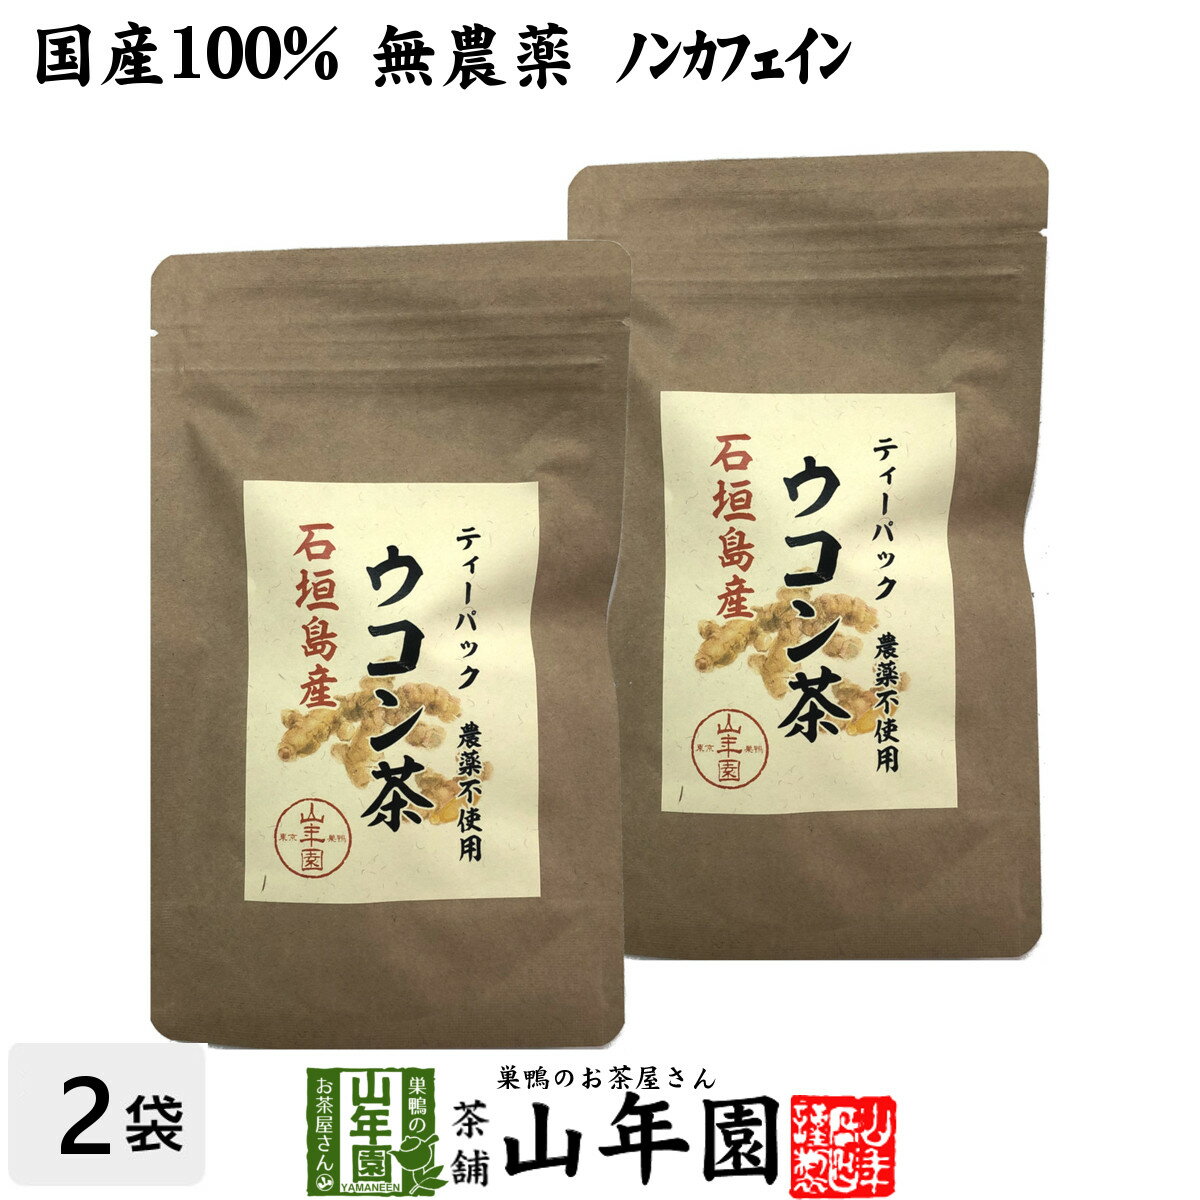 【国産 無農薬 100%】ウコン茶 1.5g×10